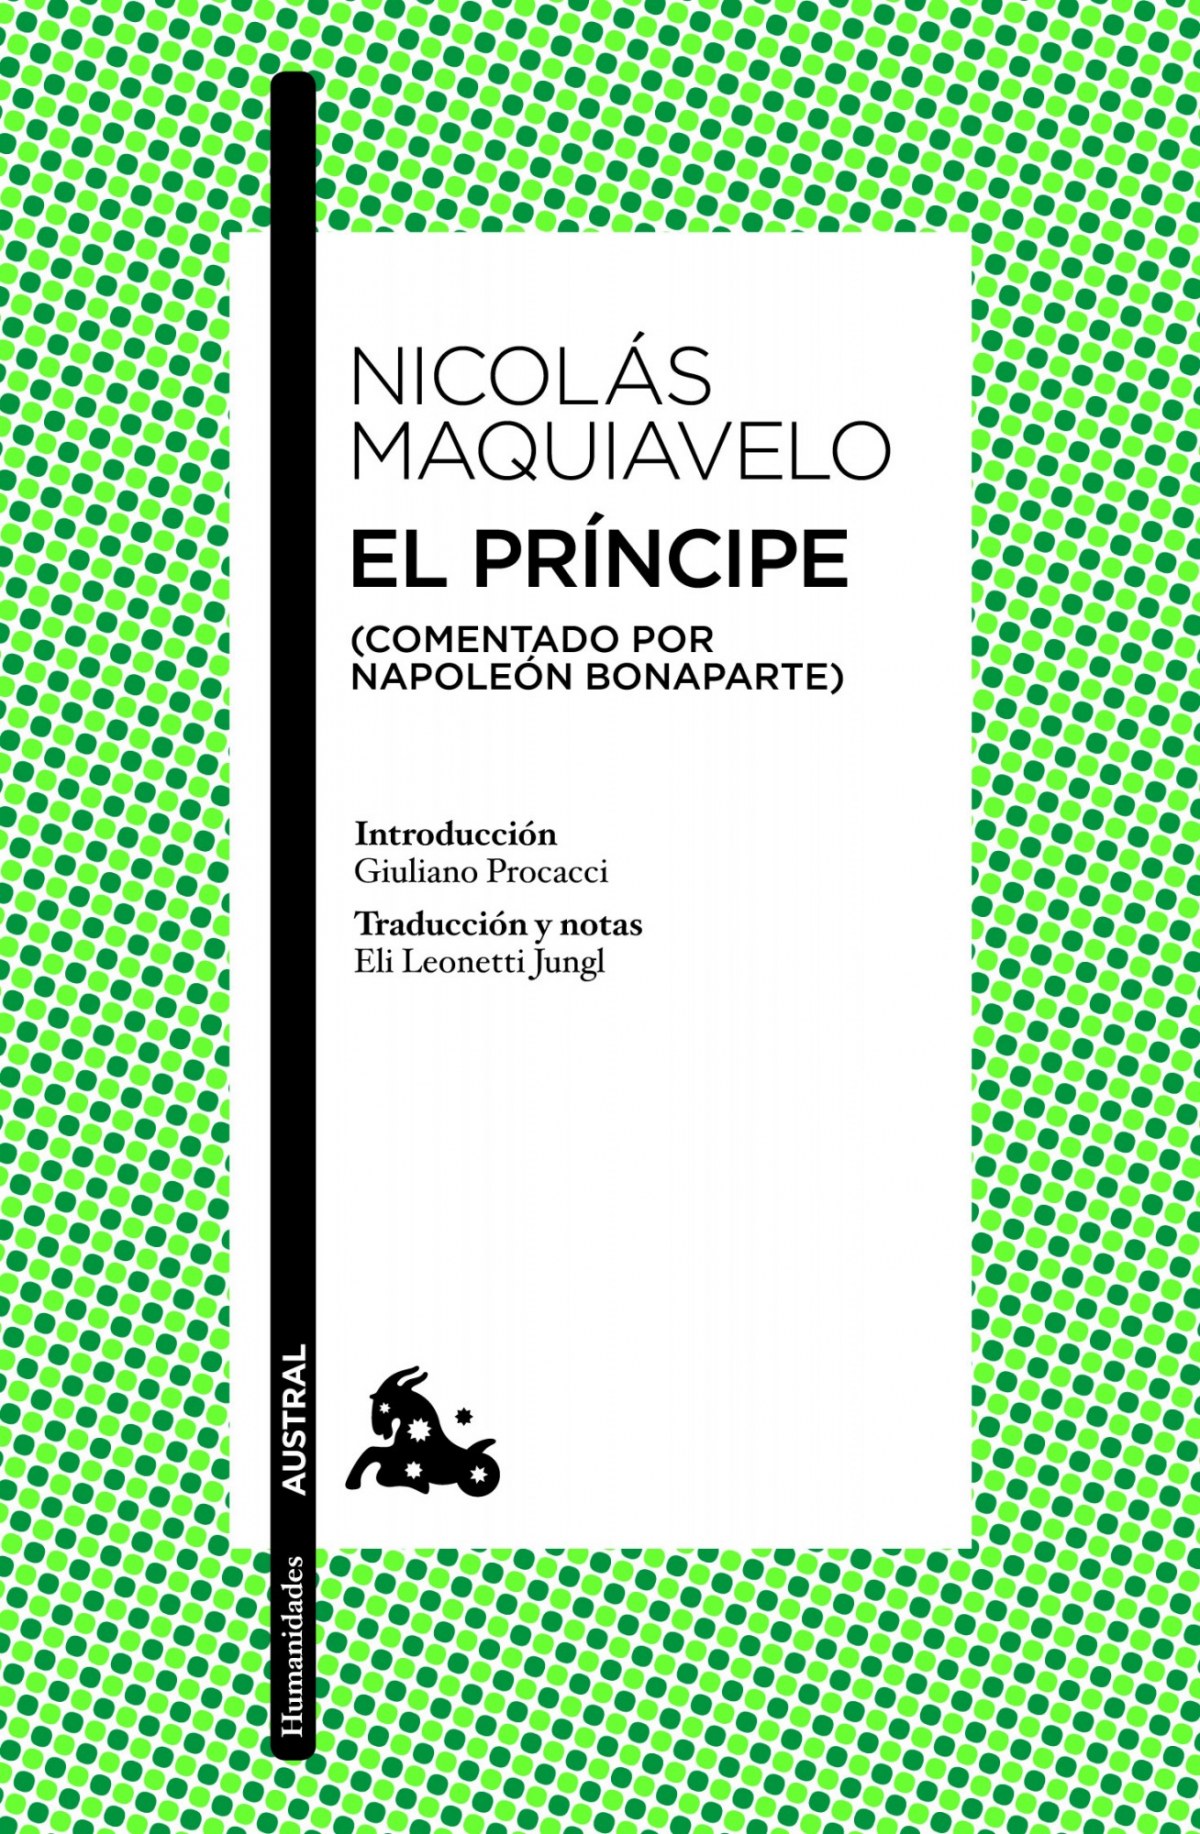 El príncipe (comentado por napoleón bonaparte) - Nicolás Maquiavelo